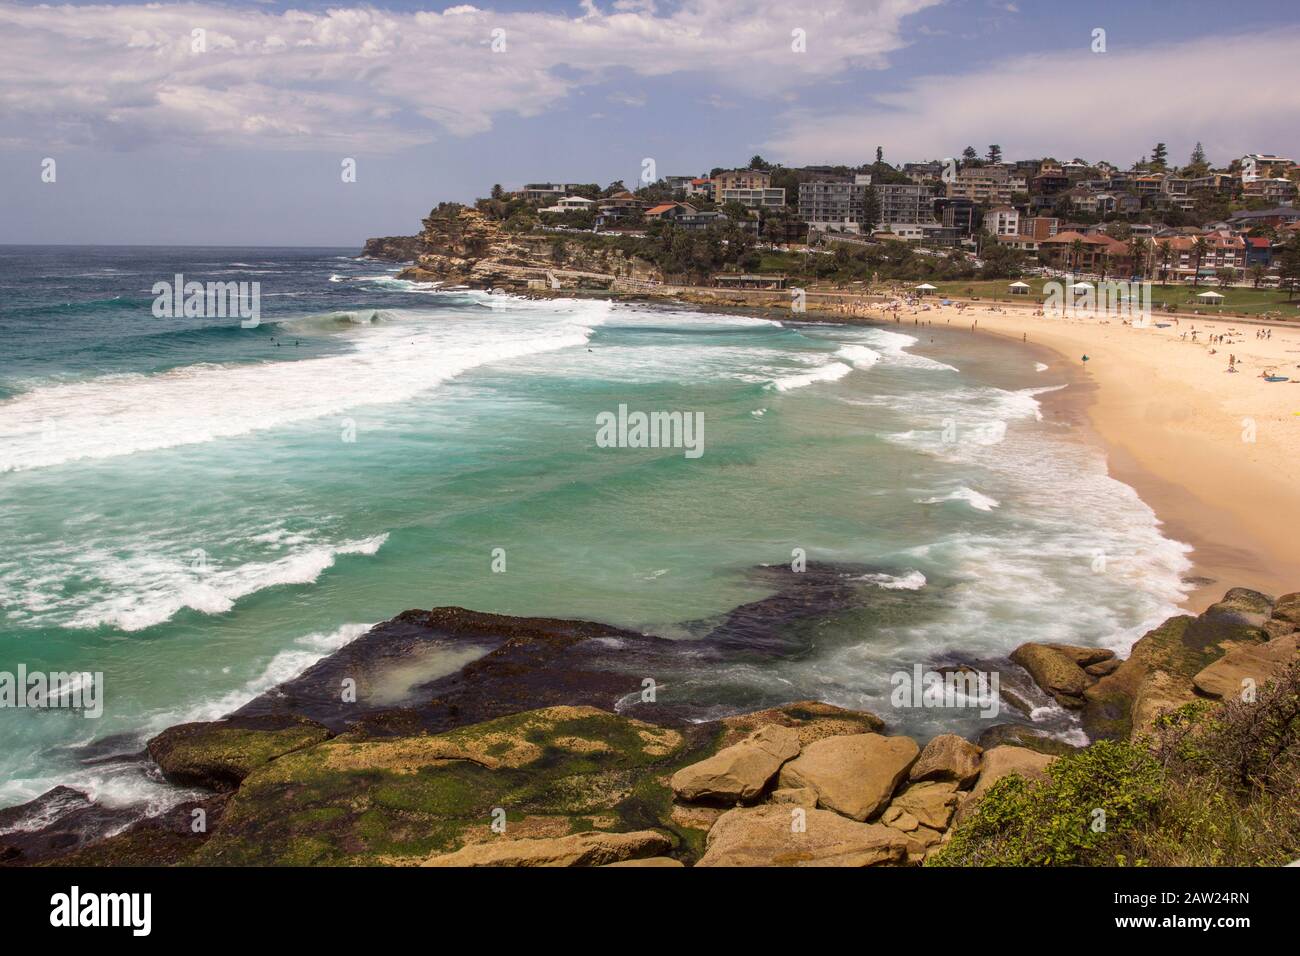 Bronte beach, Bondi to Coogee Coastal walk, Sydney, Australia Stock Photo